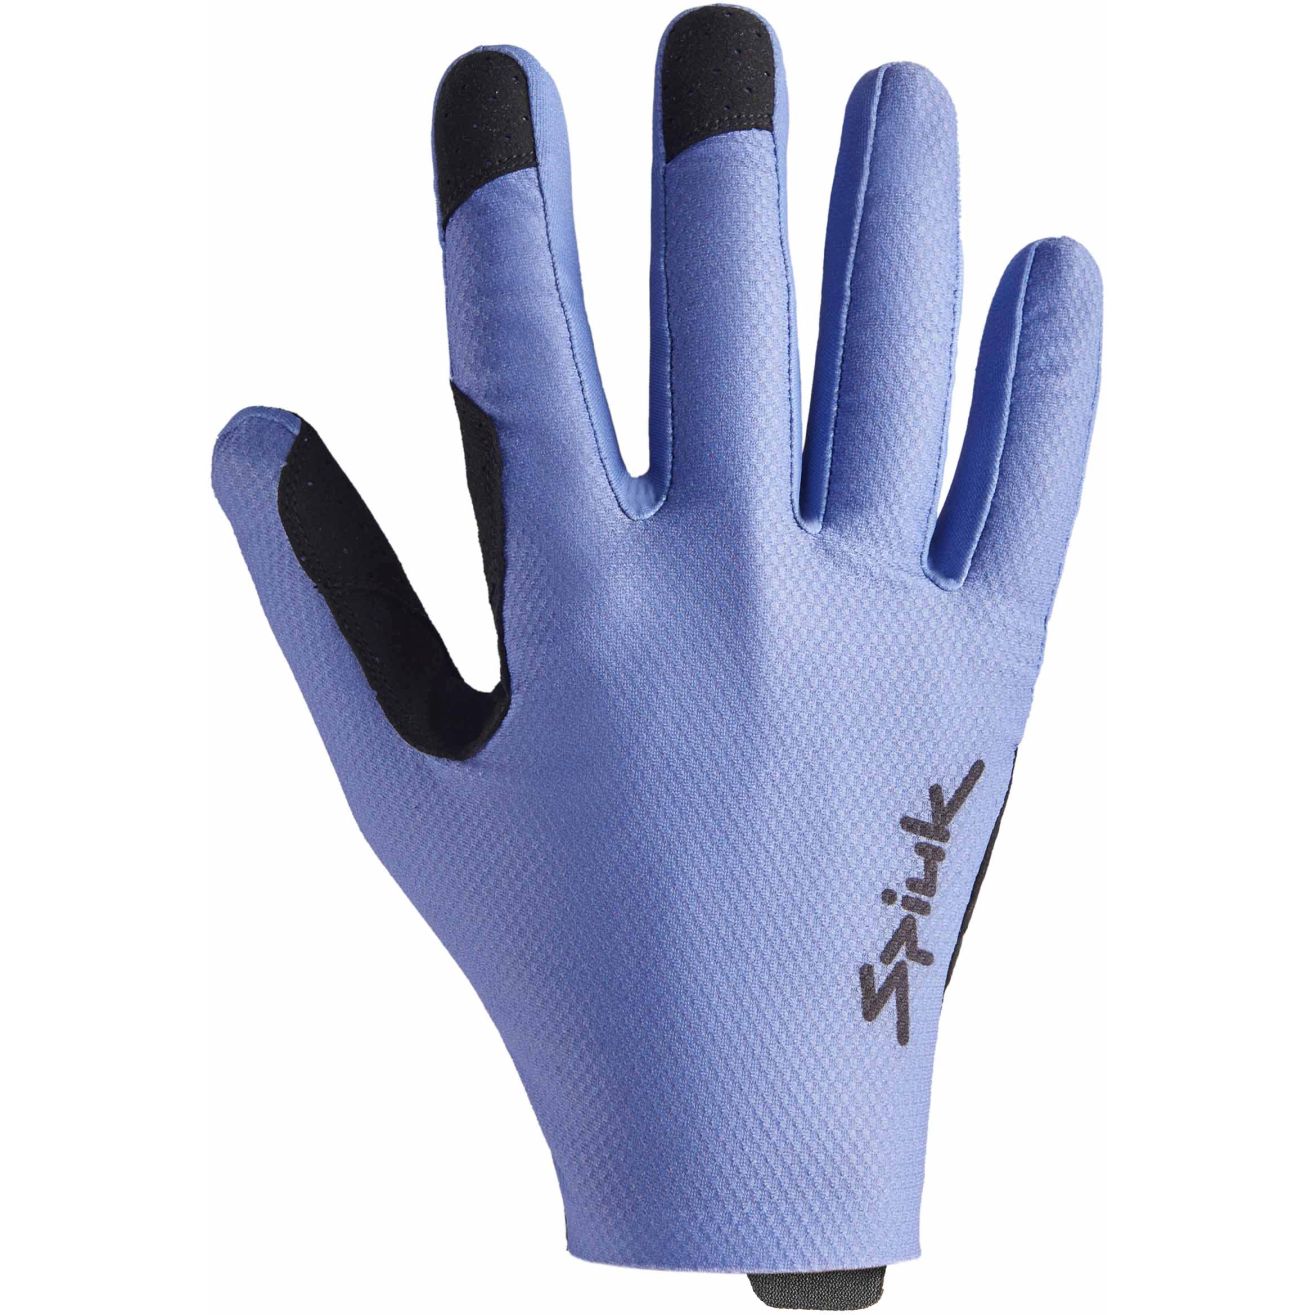 Productfoto van Spiuk ALL TERRAIN Gravel Handschoenen - blauw